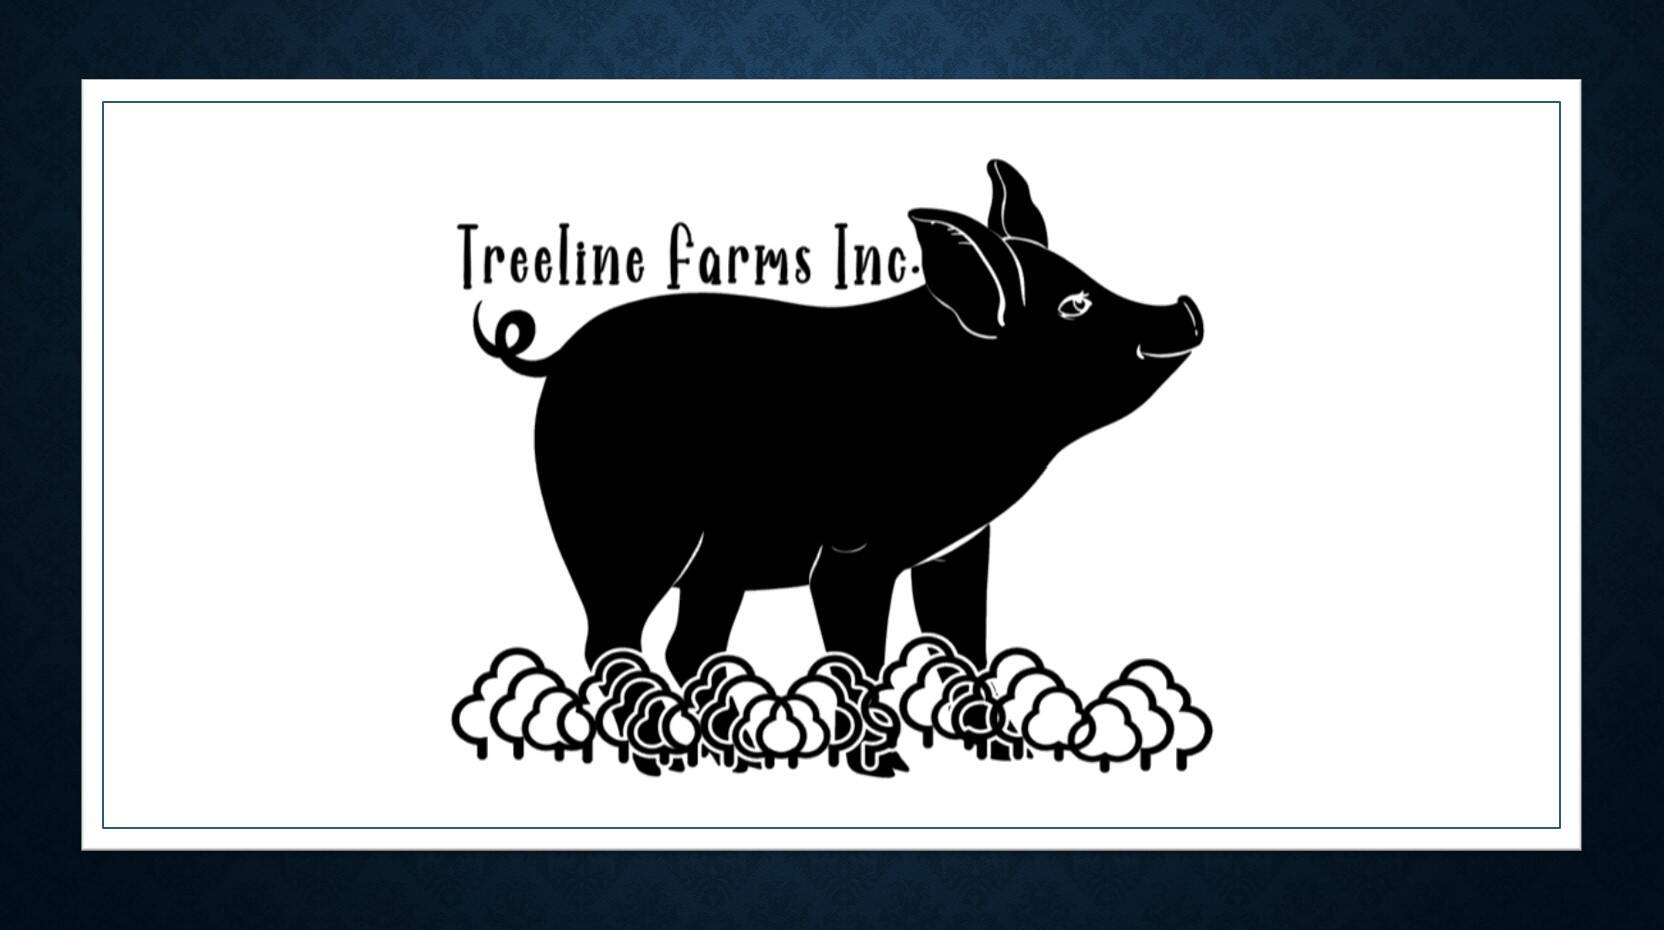 Treeline Farms Inc